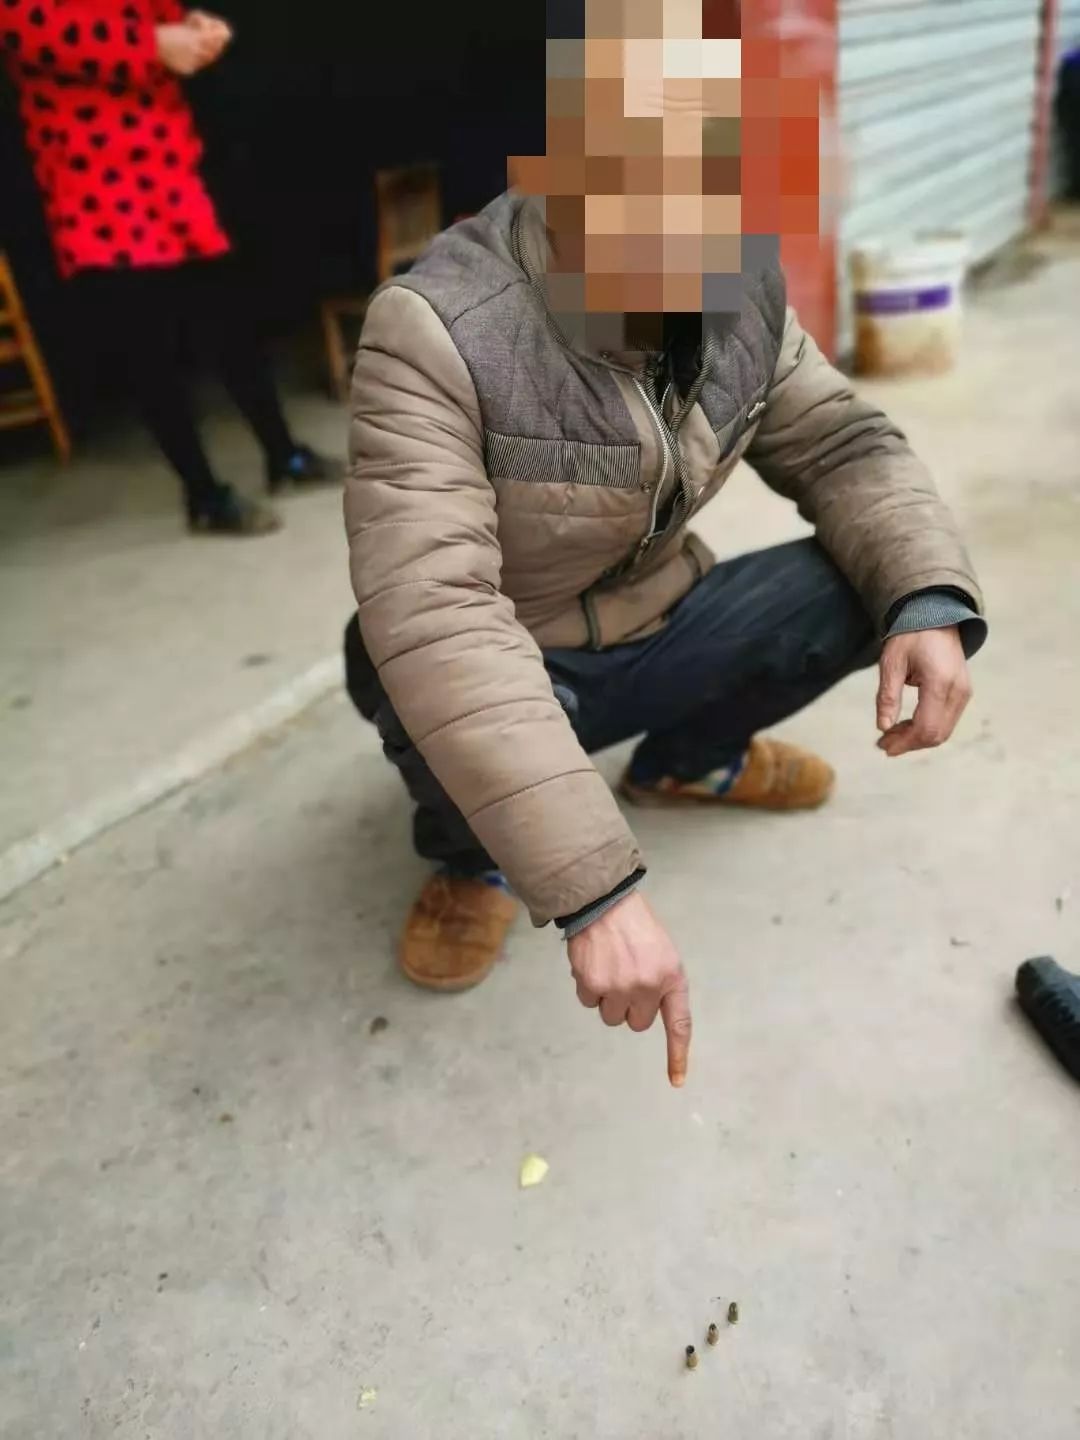 隐患 2019年12月25日,民警在某村民李某某家中 发现 一支已改装射钉枪